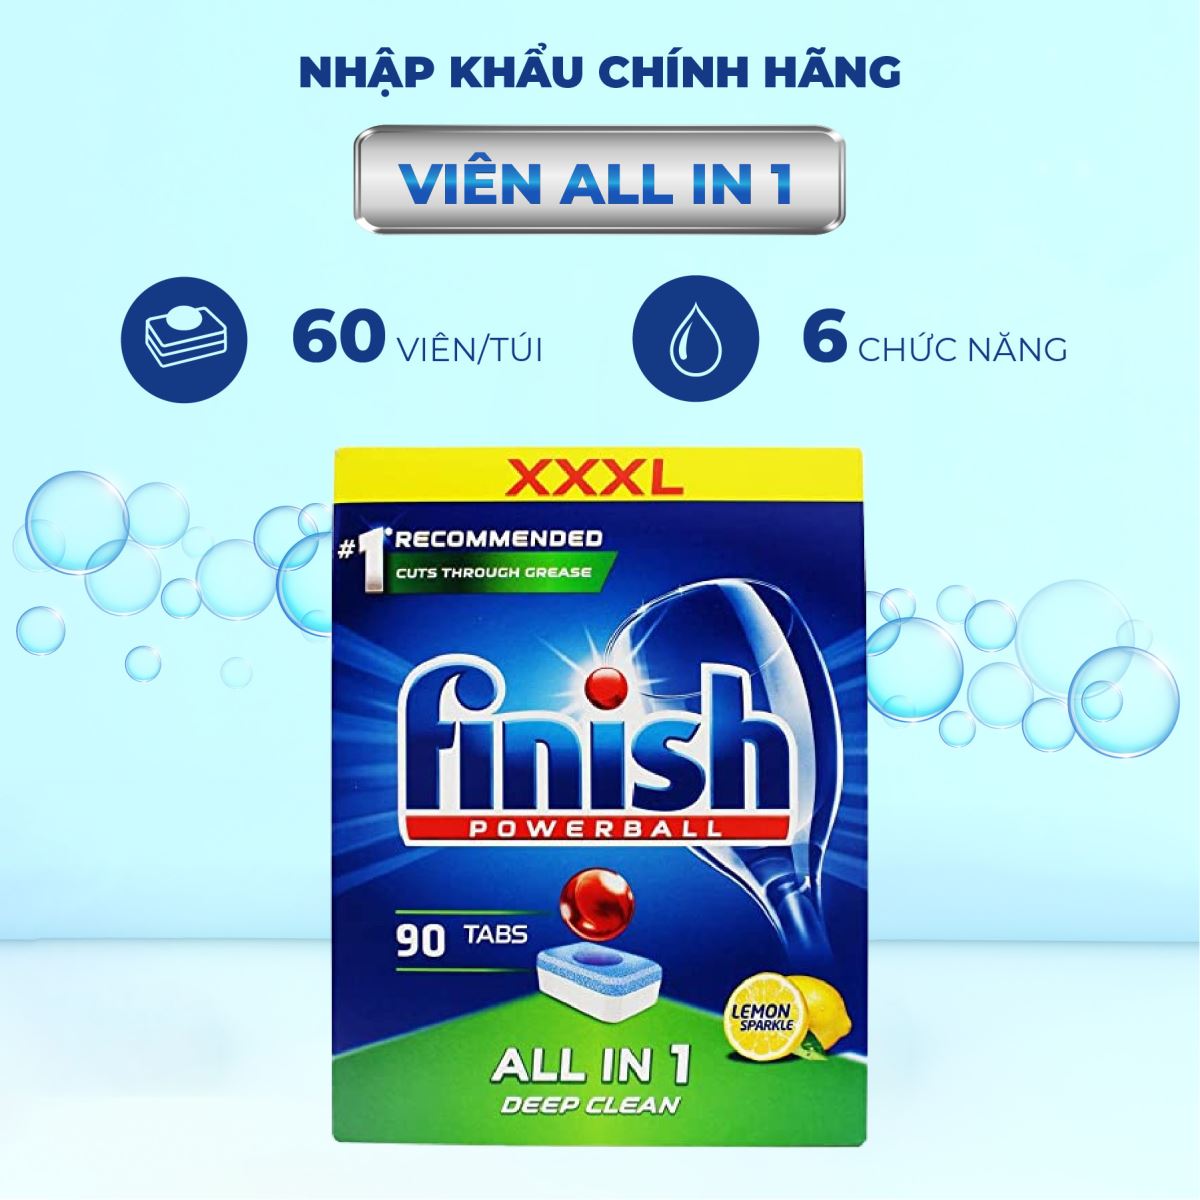 Viên rửa bát Finish All in one 90 viên - Hương Chanh - 6 chức năng